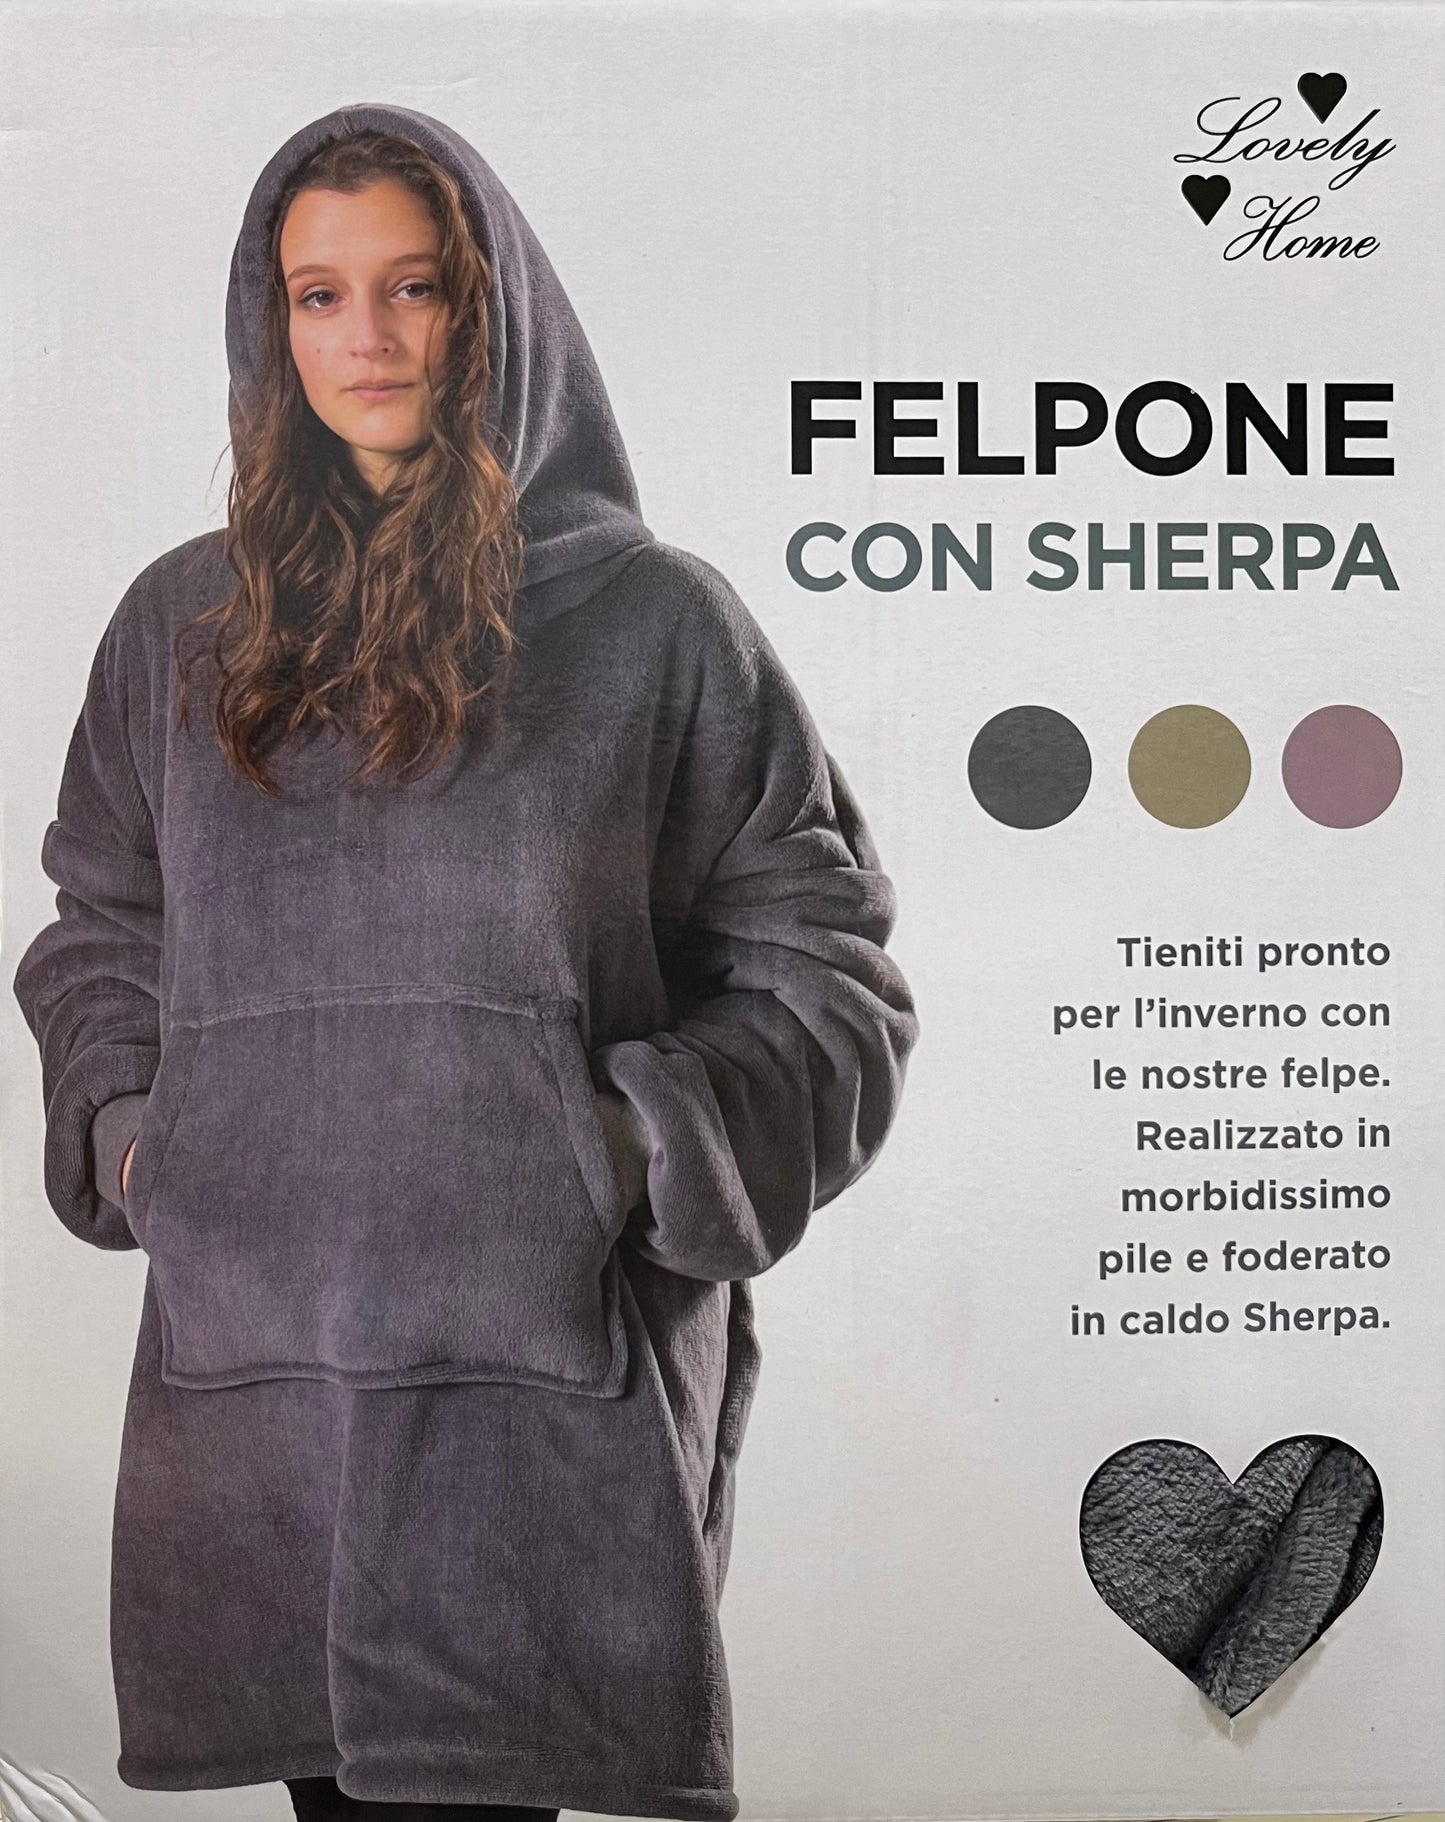 Felpone con Sherpa - Lovely Home